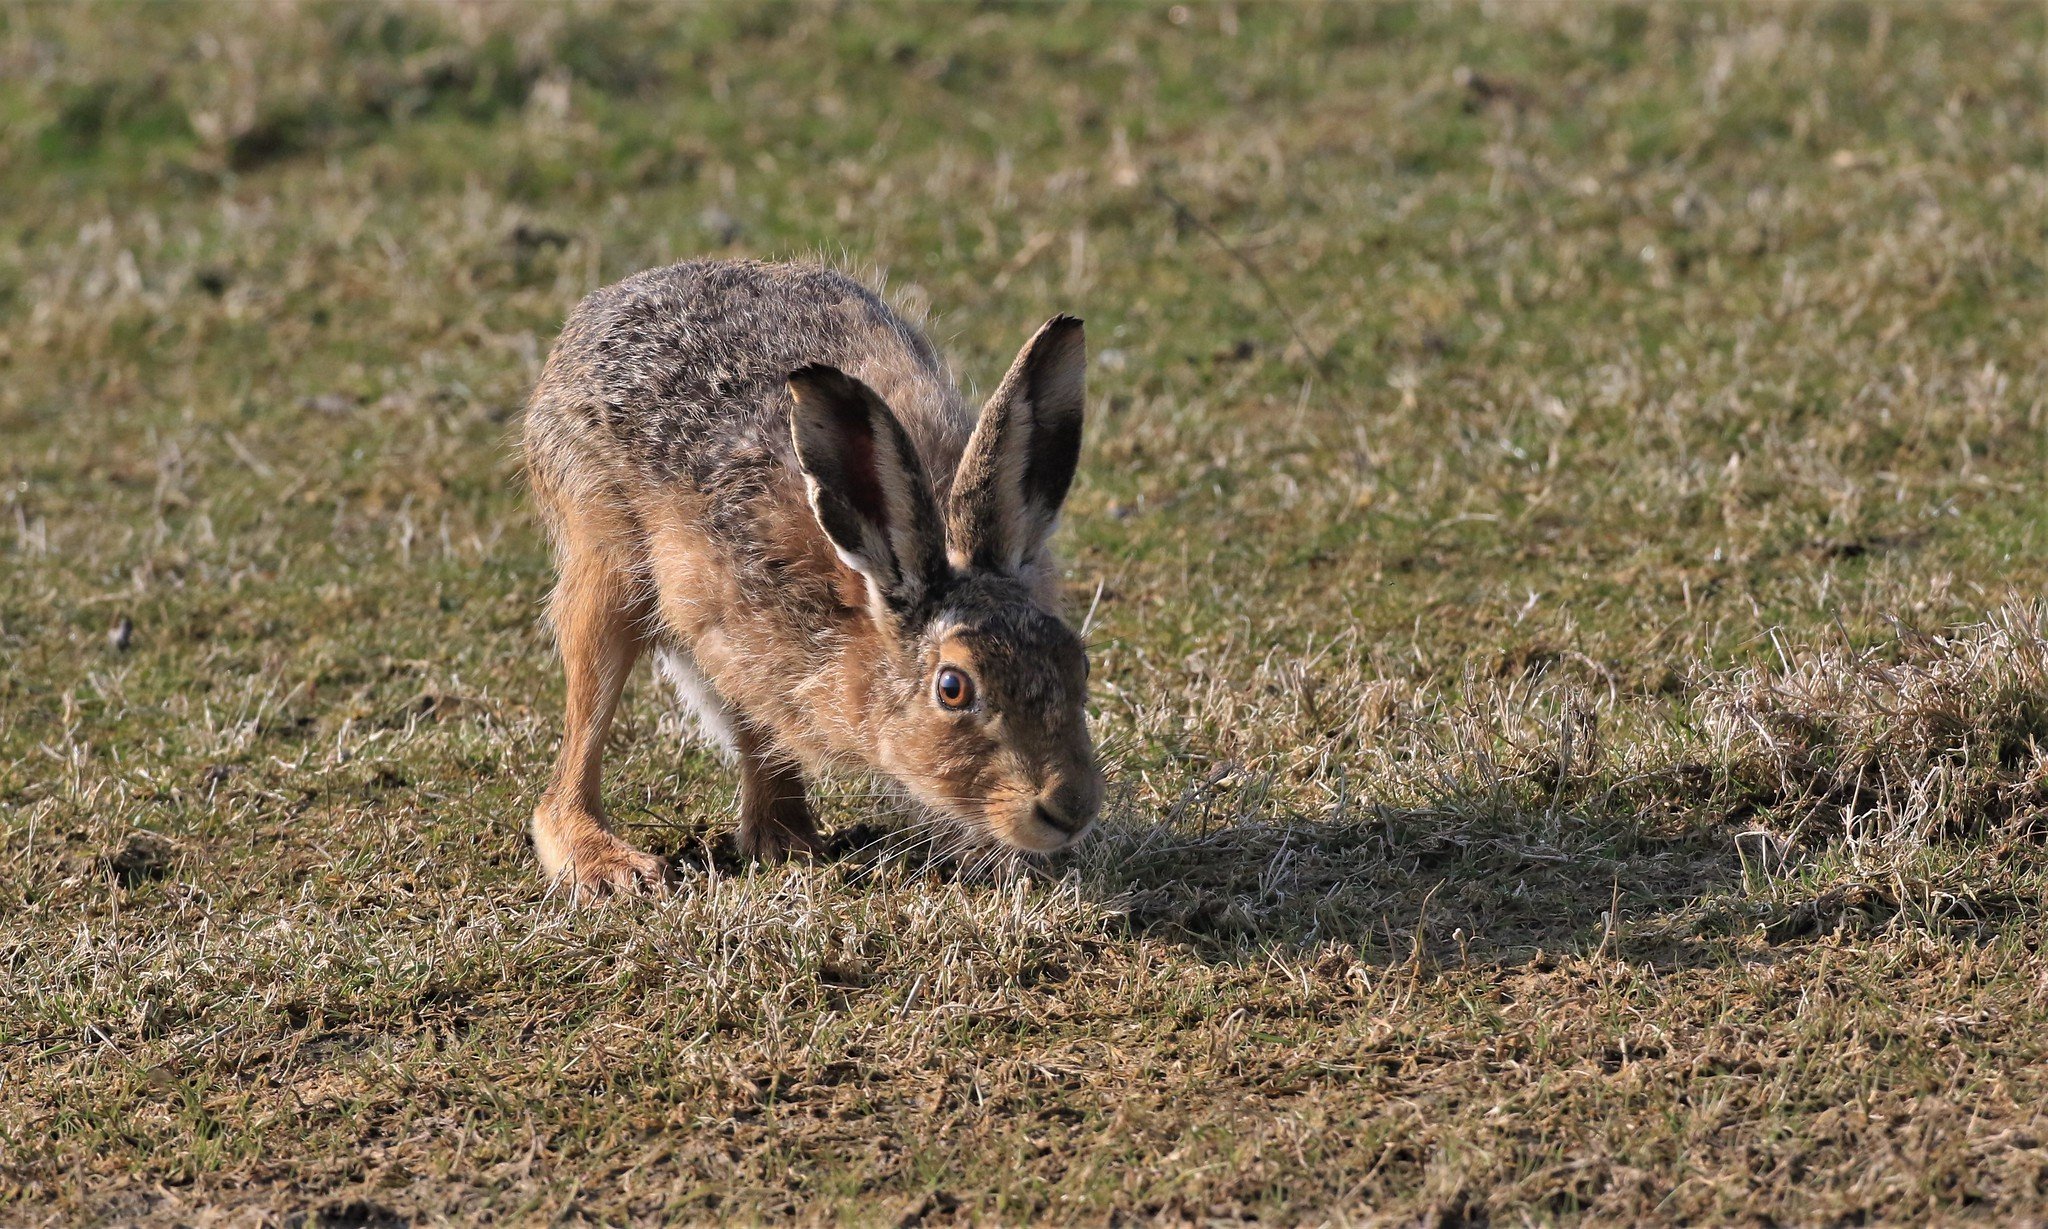 У зайца русака глаза. Заяц Русак в Оренбургской области. Способ размножения зайца русака. Внешний вид зайца из степи. Заяц Русак фото для сканворда.